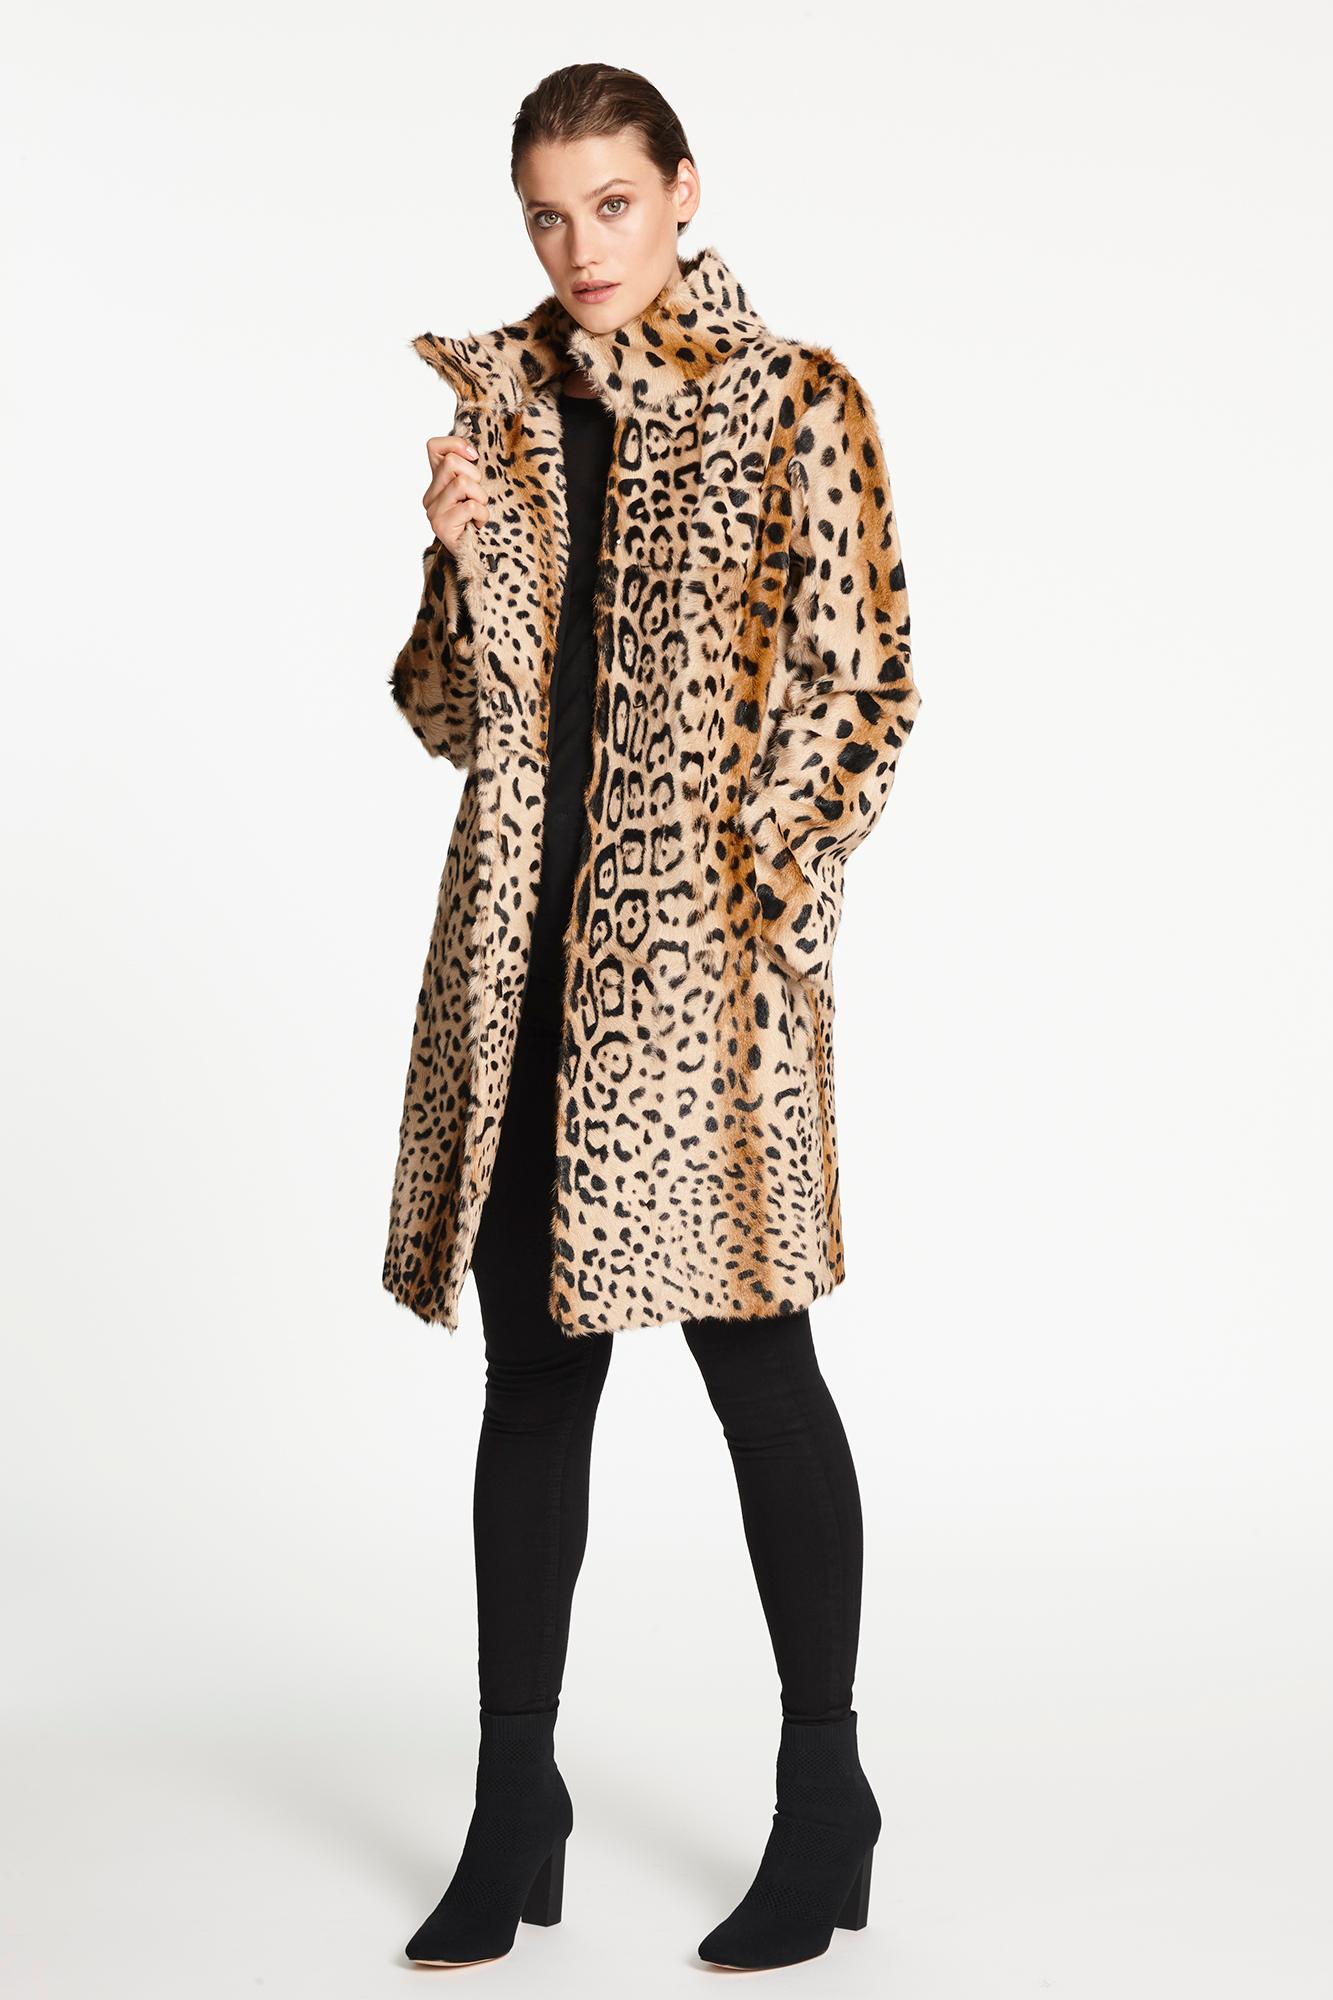 Verheyen Lon High Collar Leopard Print Coat in Goat Hair Fur Size 12-14 1